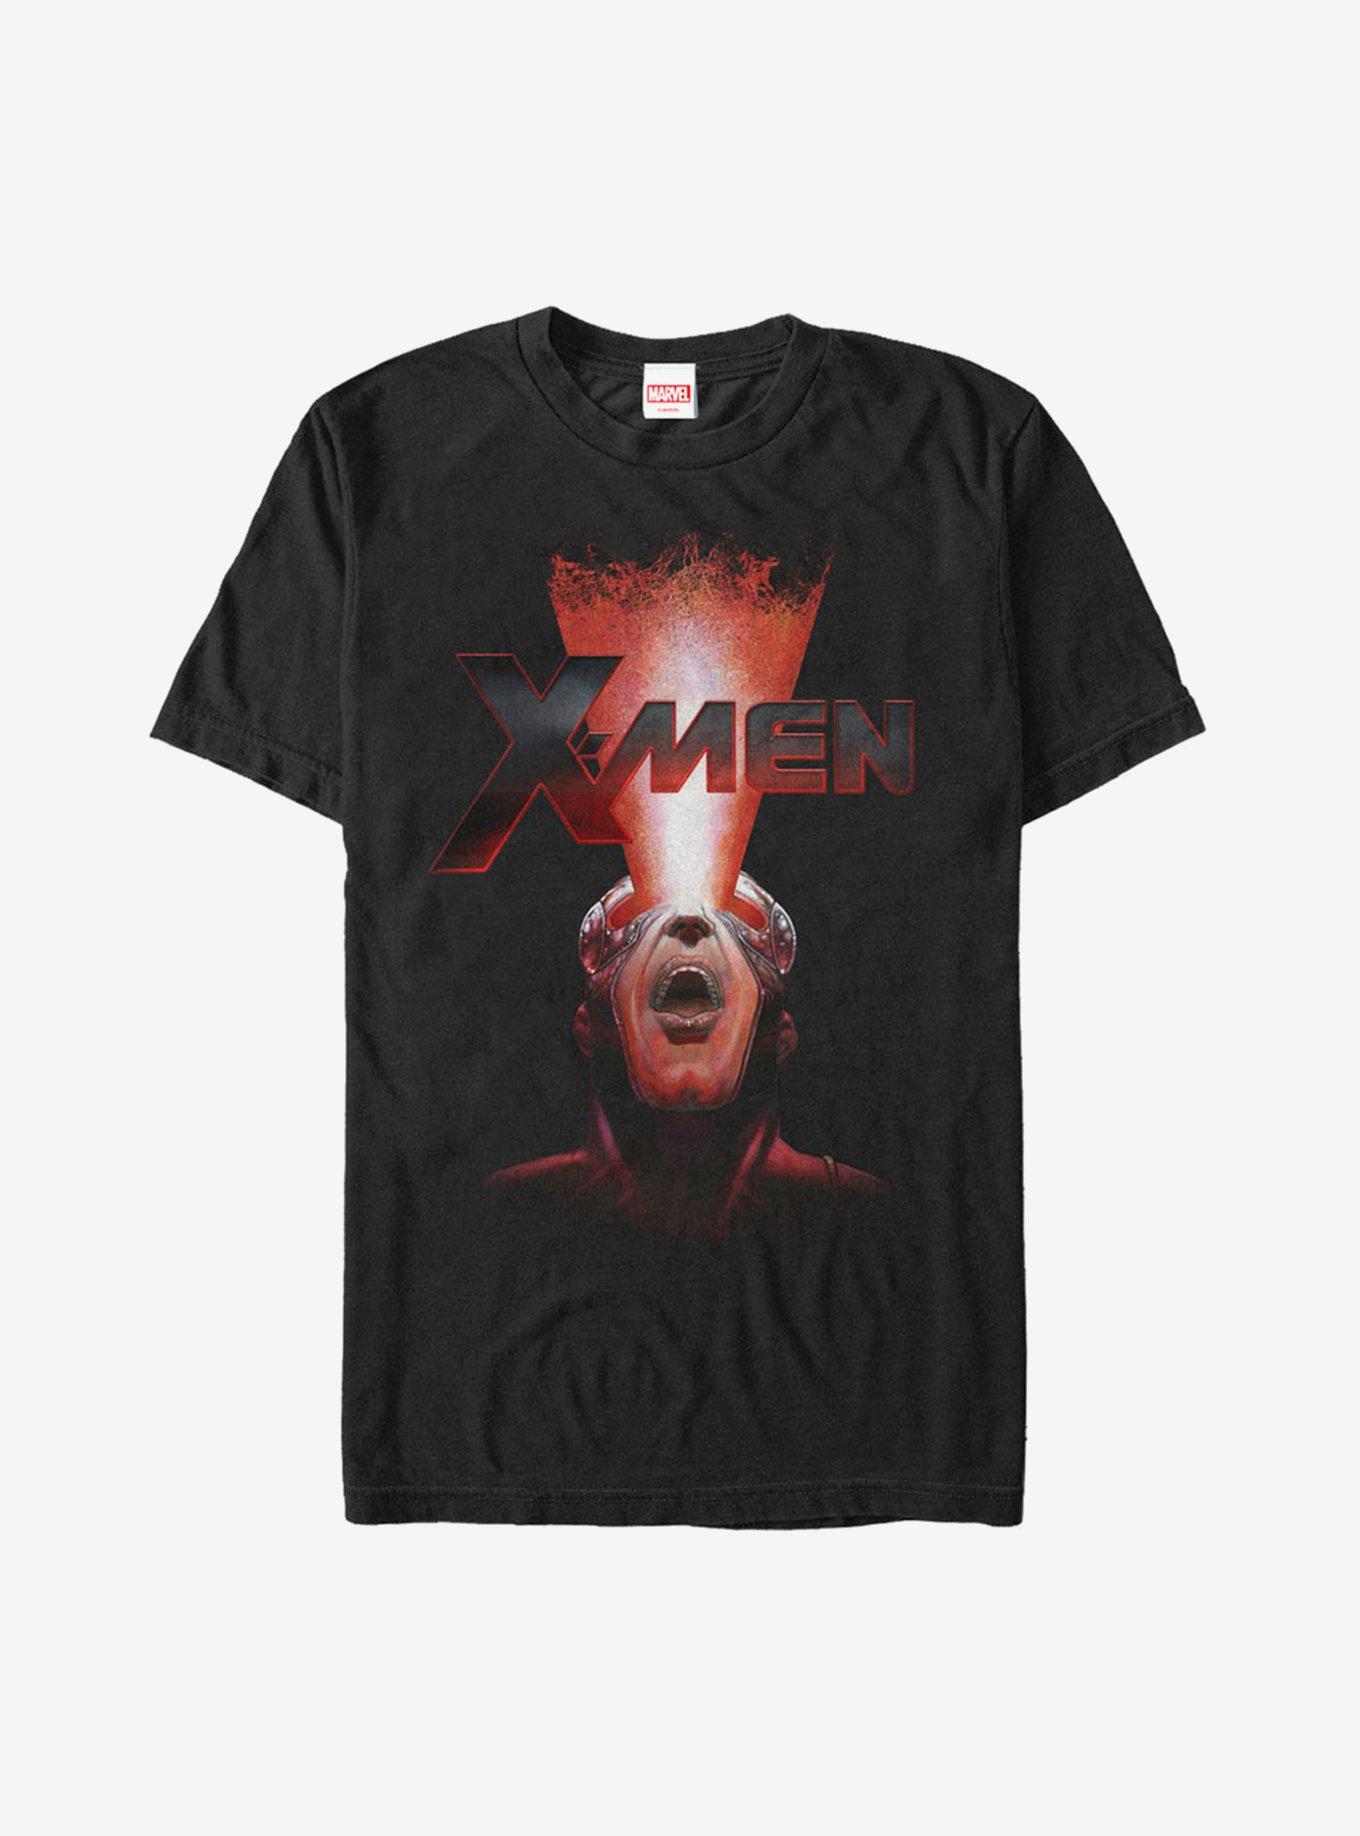 Marvel X-Men Cyclops Blast T-Shirt, BLACK, hi-res